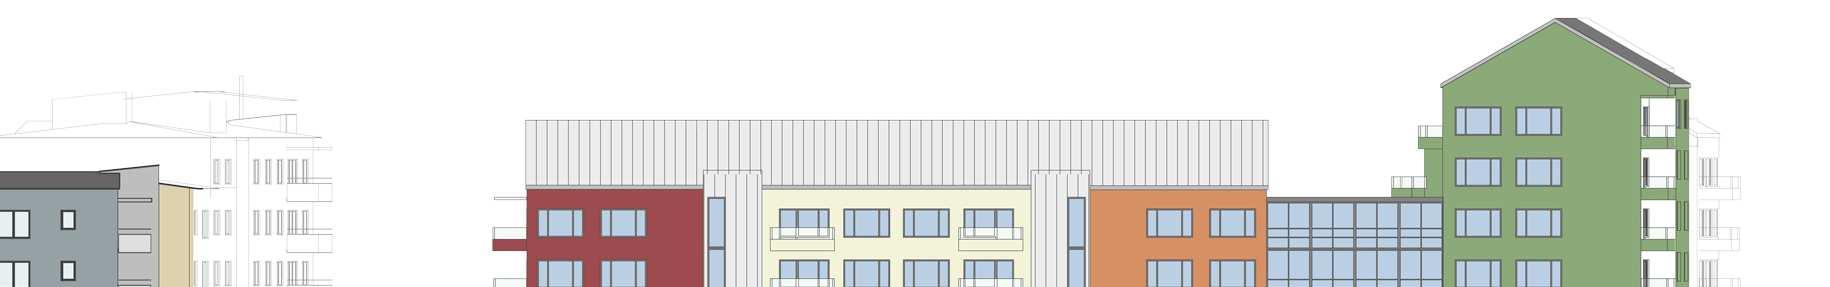 SID 9 (16) Planförslaget Föreslagen bebyggelse De omkringliggande byggnadernas skala är en annan än den från 40-talets smalhusbebyggelse.